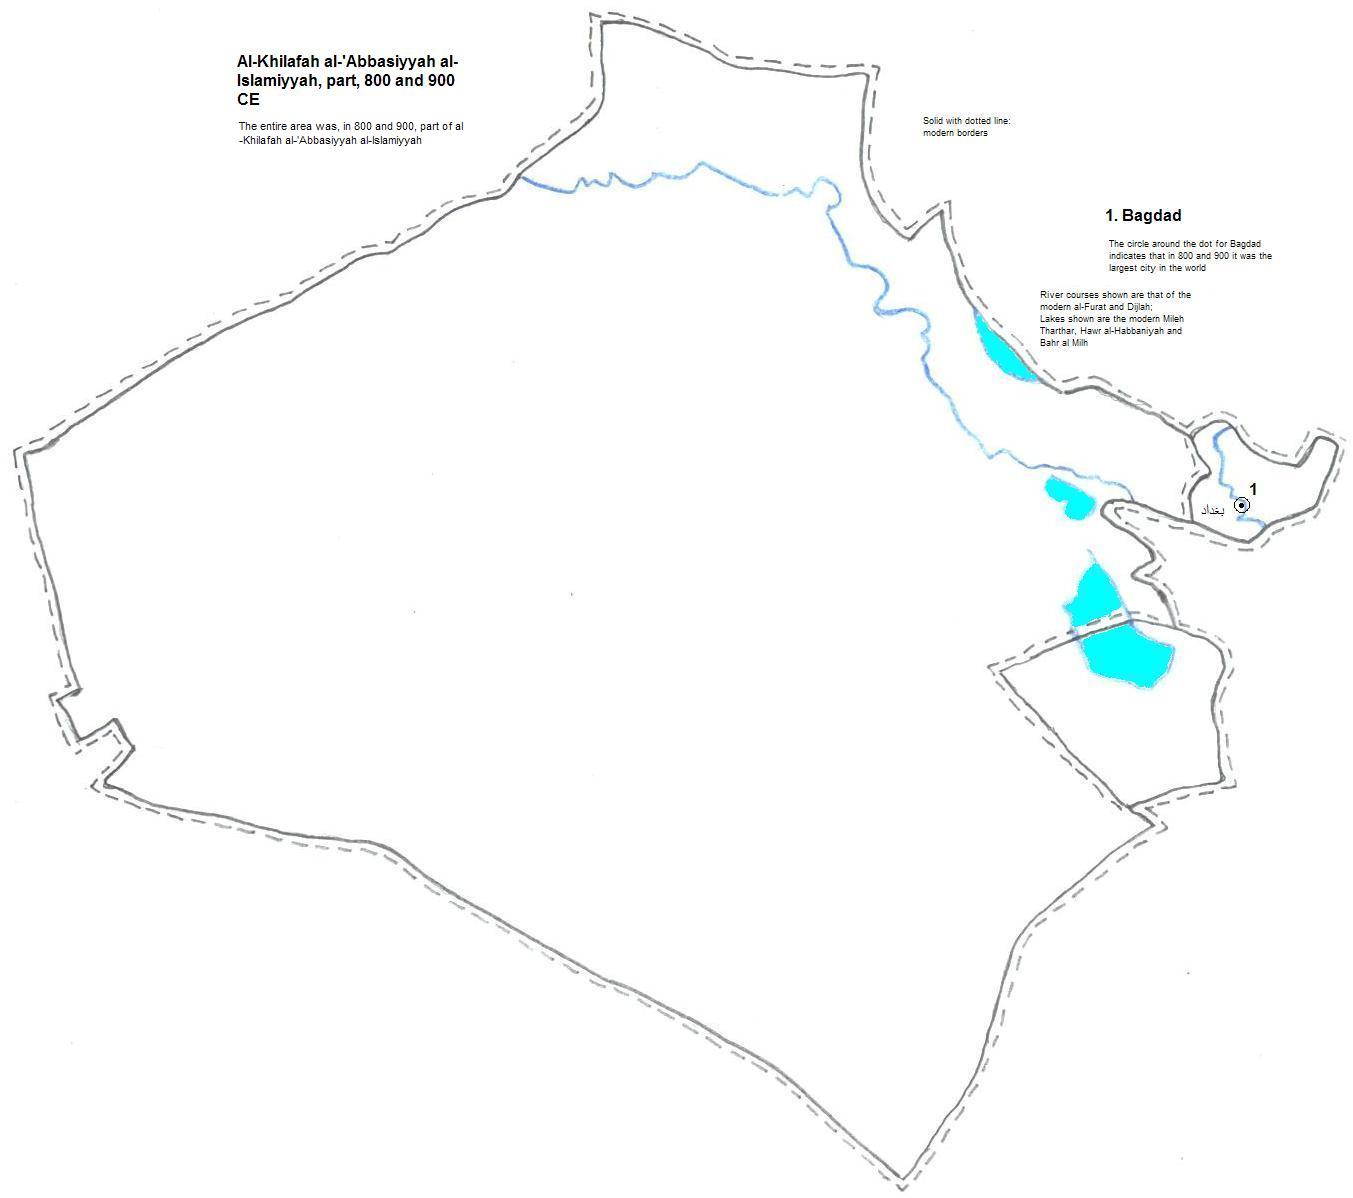 map showing part of al-Khilafah al-'Abbasiyyah al-Islamiyyah, 800 and 900 CE